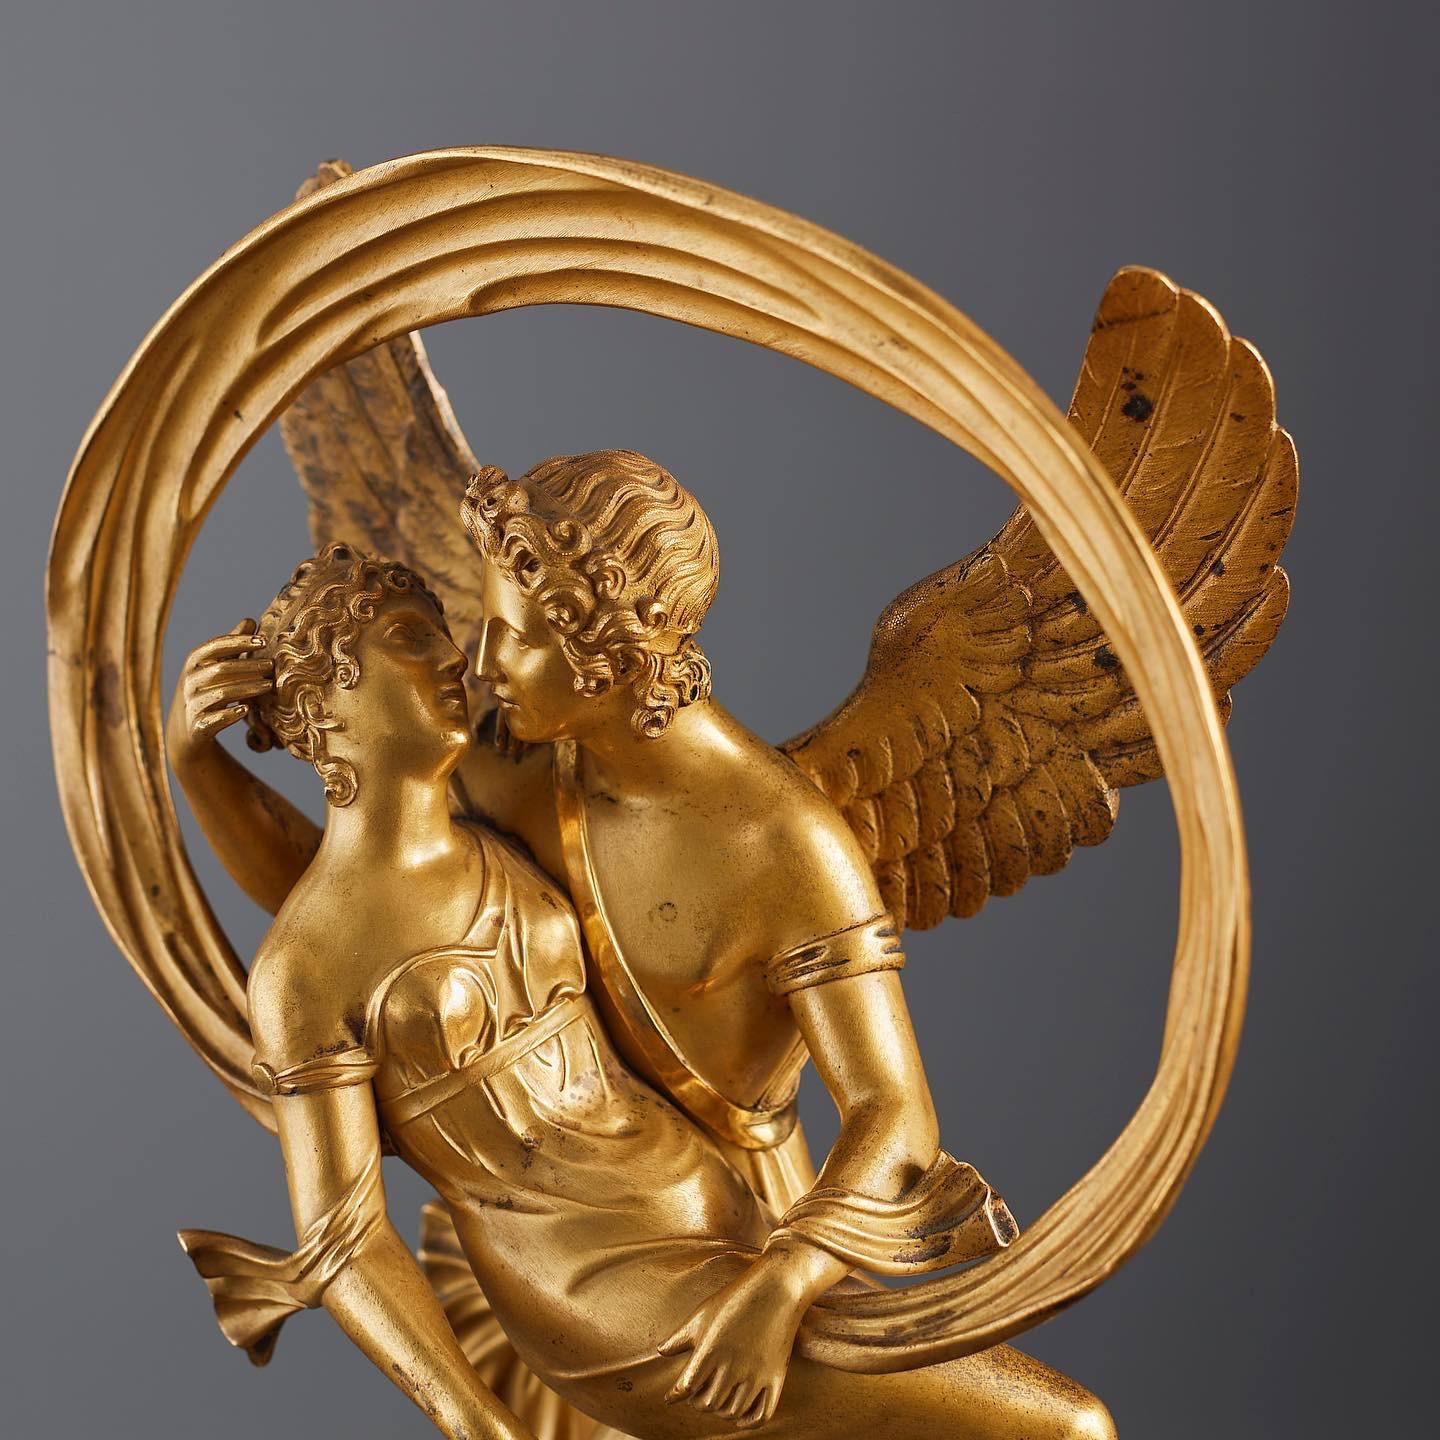 Cette belle sculpture en bronze de style Empire représente Amor ailé portant Vénus, qui tient une couronne dans sa main droite, entourée d'une étoffe circulaire au vent. Bronze doré finement ciselé sur un piédestal en marbre (marbre ver de mer).